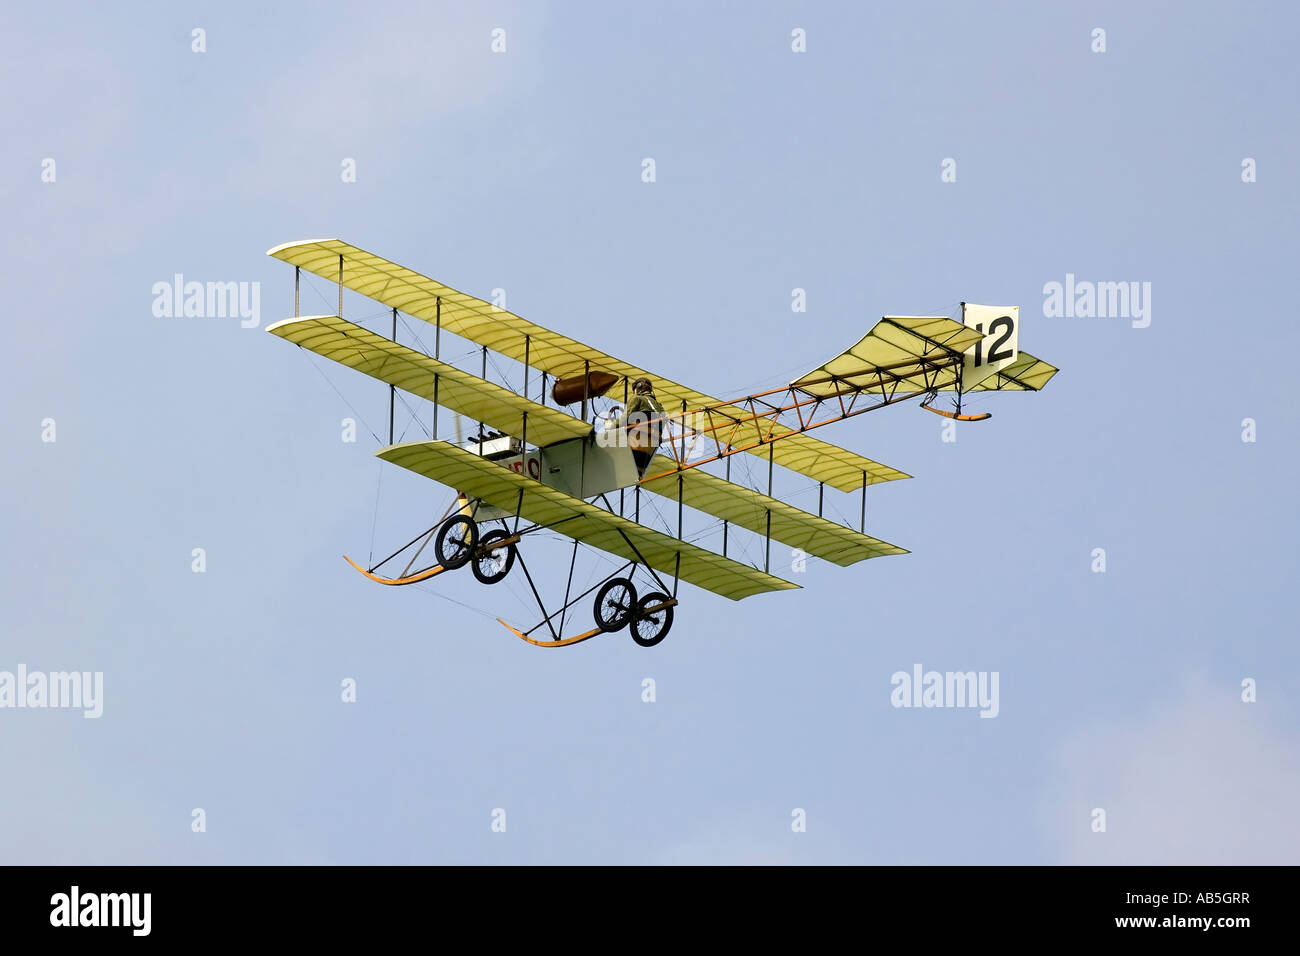 Une vieille machine volante edwardian l'Avro Triplane Banque D'Images